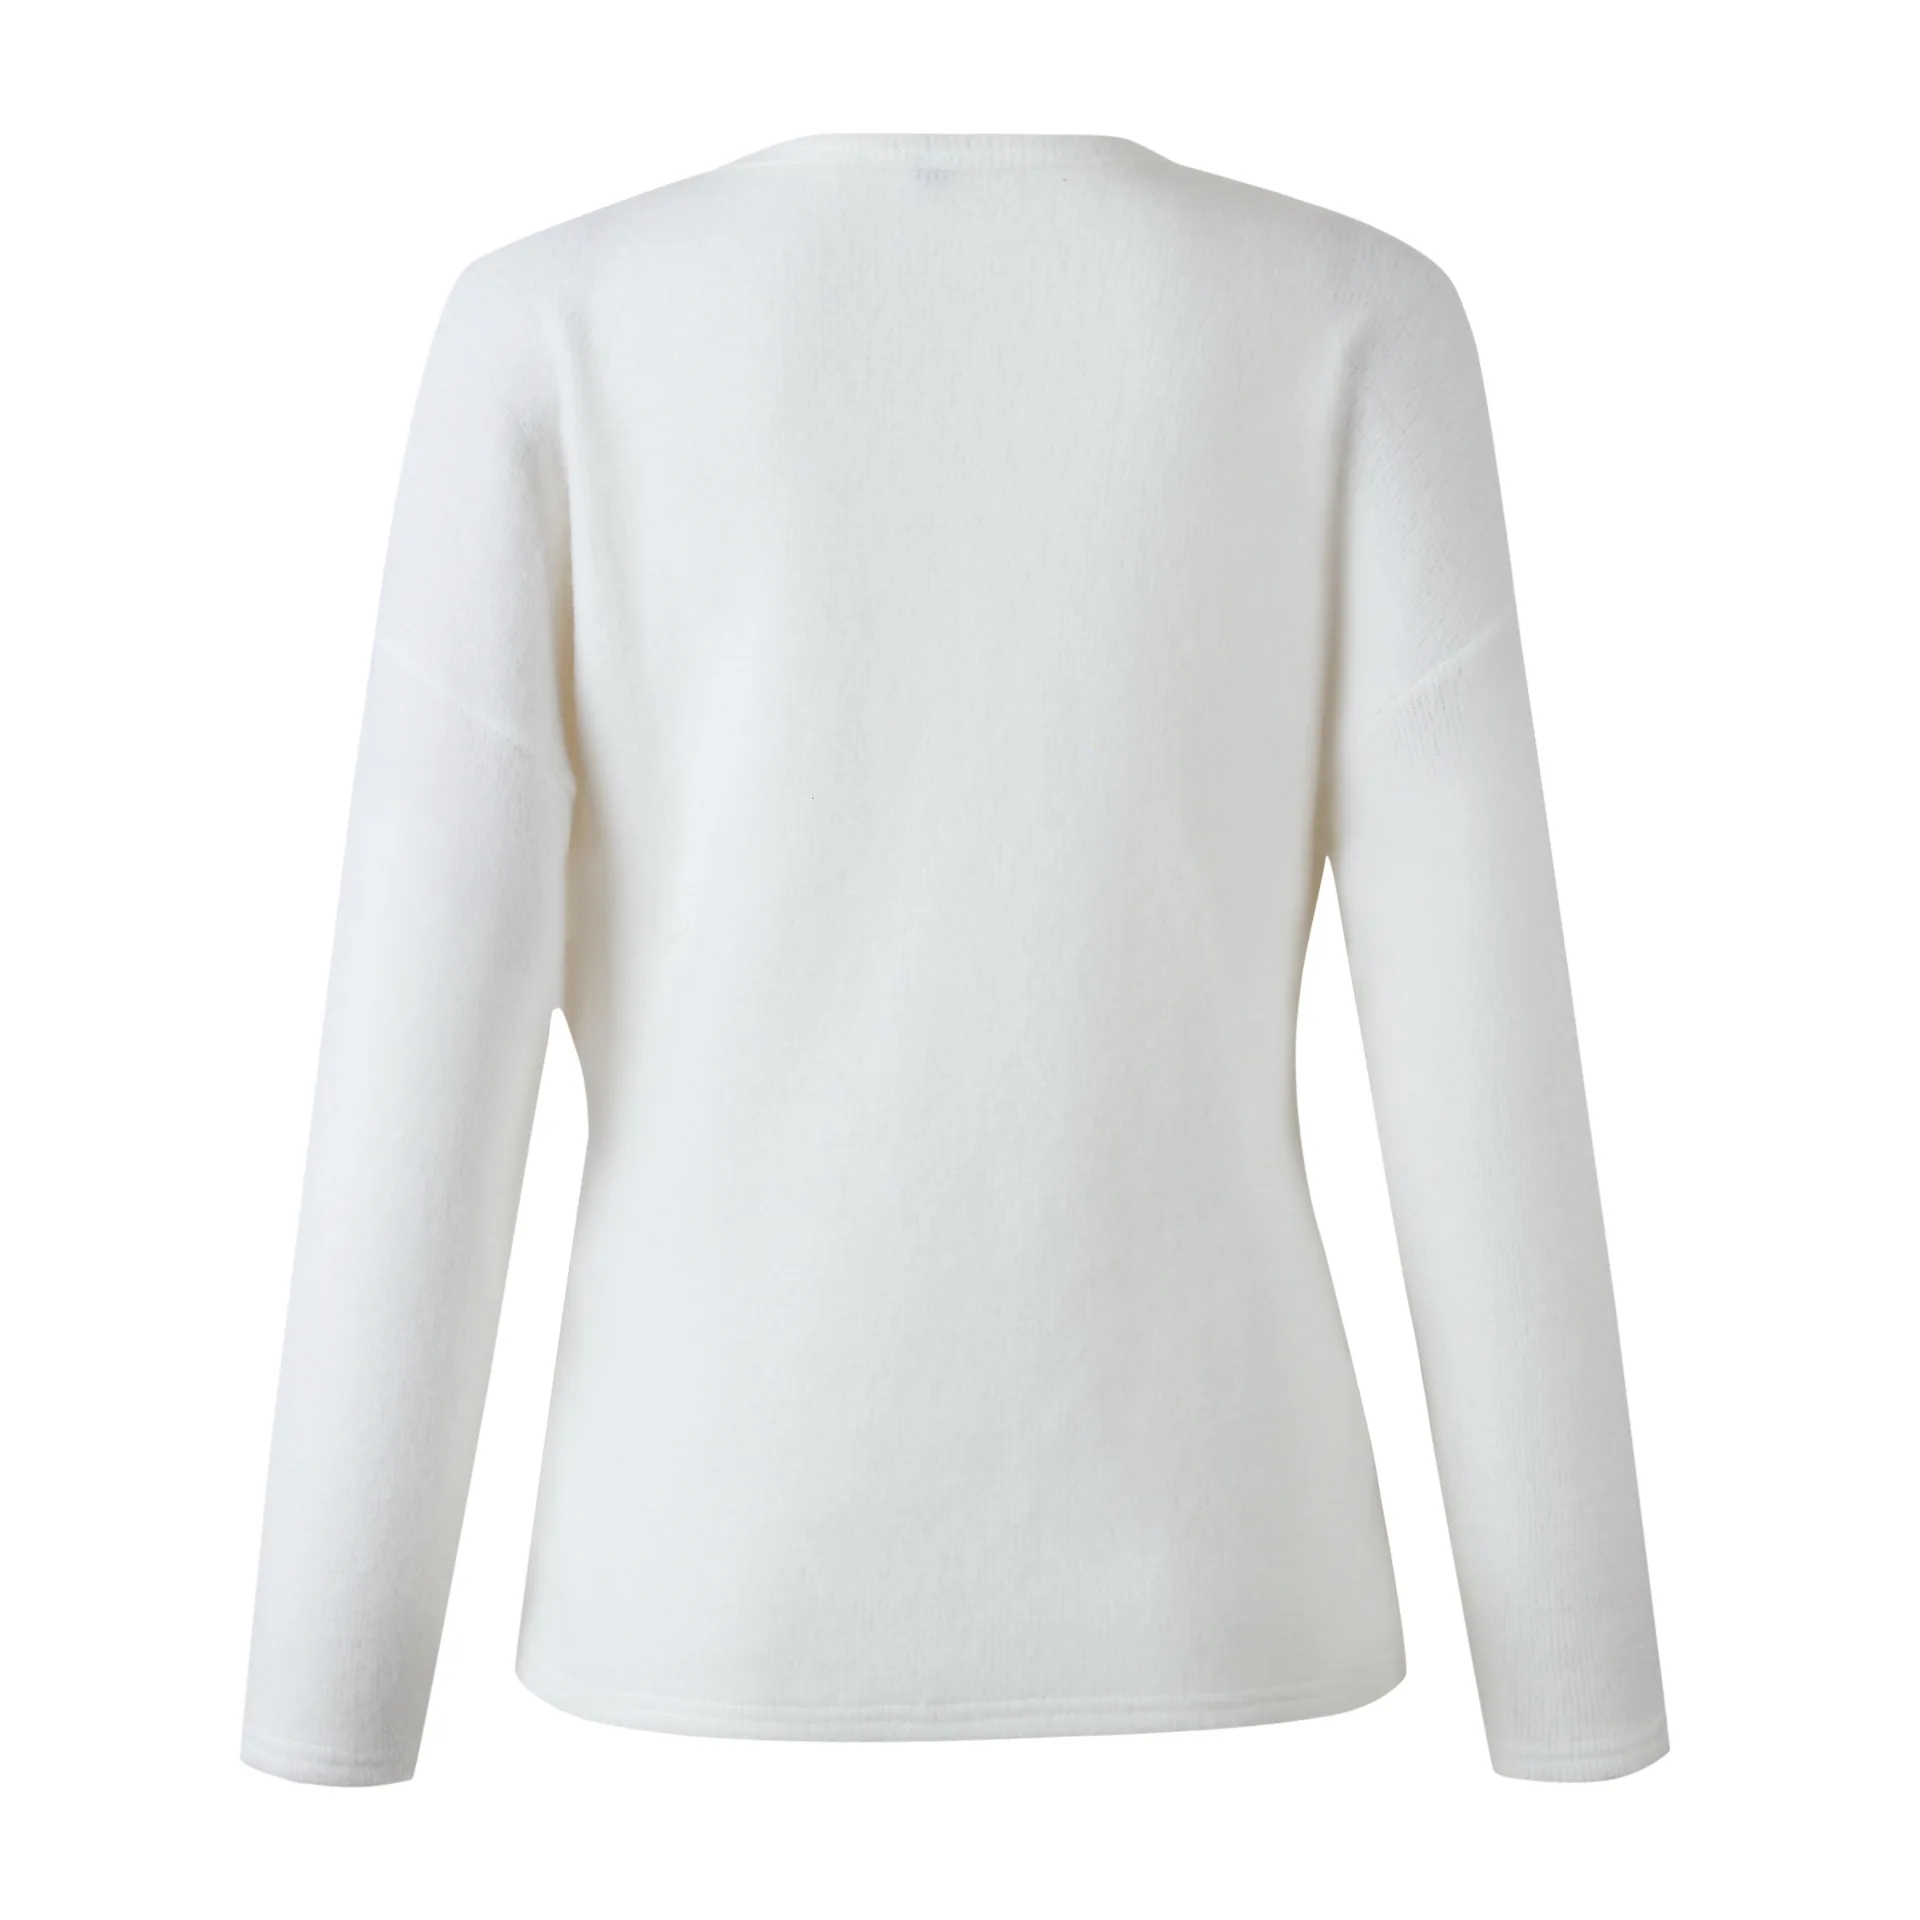 Женская однотонная полосатая футболка с v-образным вырезом и длинным рукавом, осенняя Женская тонкая рубашка с бантиком, классическая элегантная черно-белая рубашка, вязаные топы